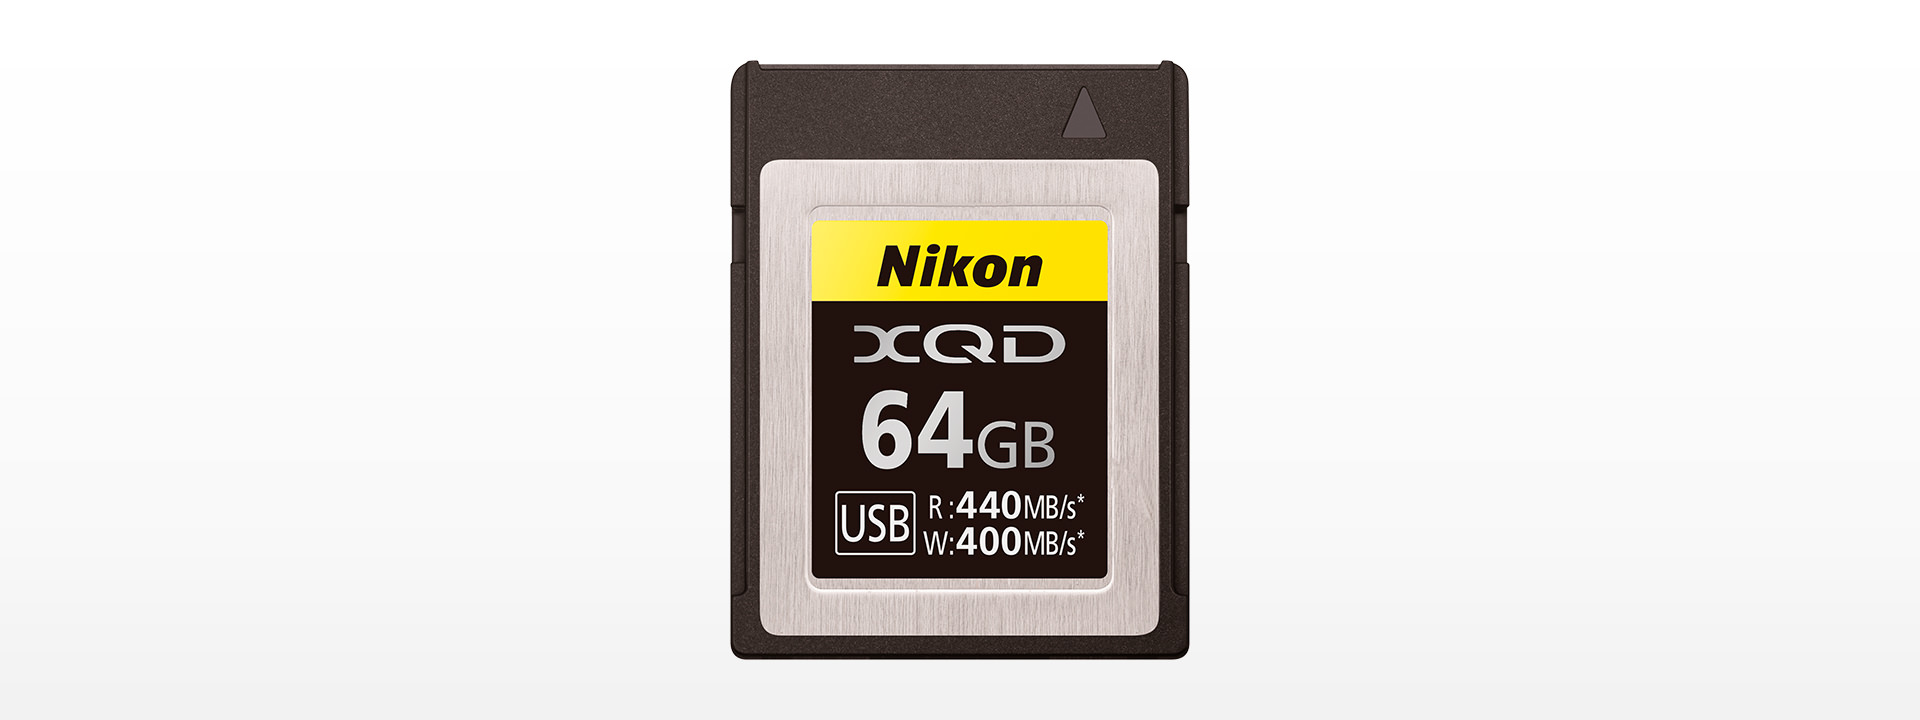 Nikon XQDメモリーカード 64GB MC-XQ64G-